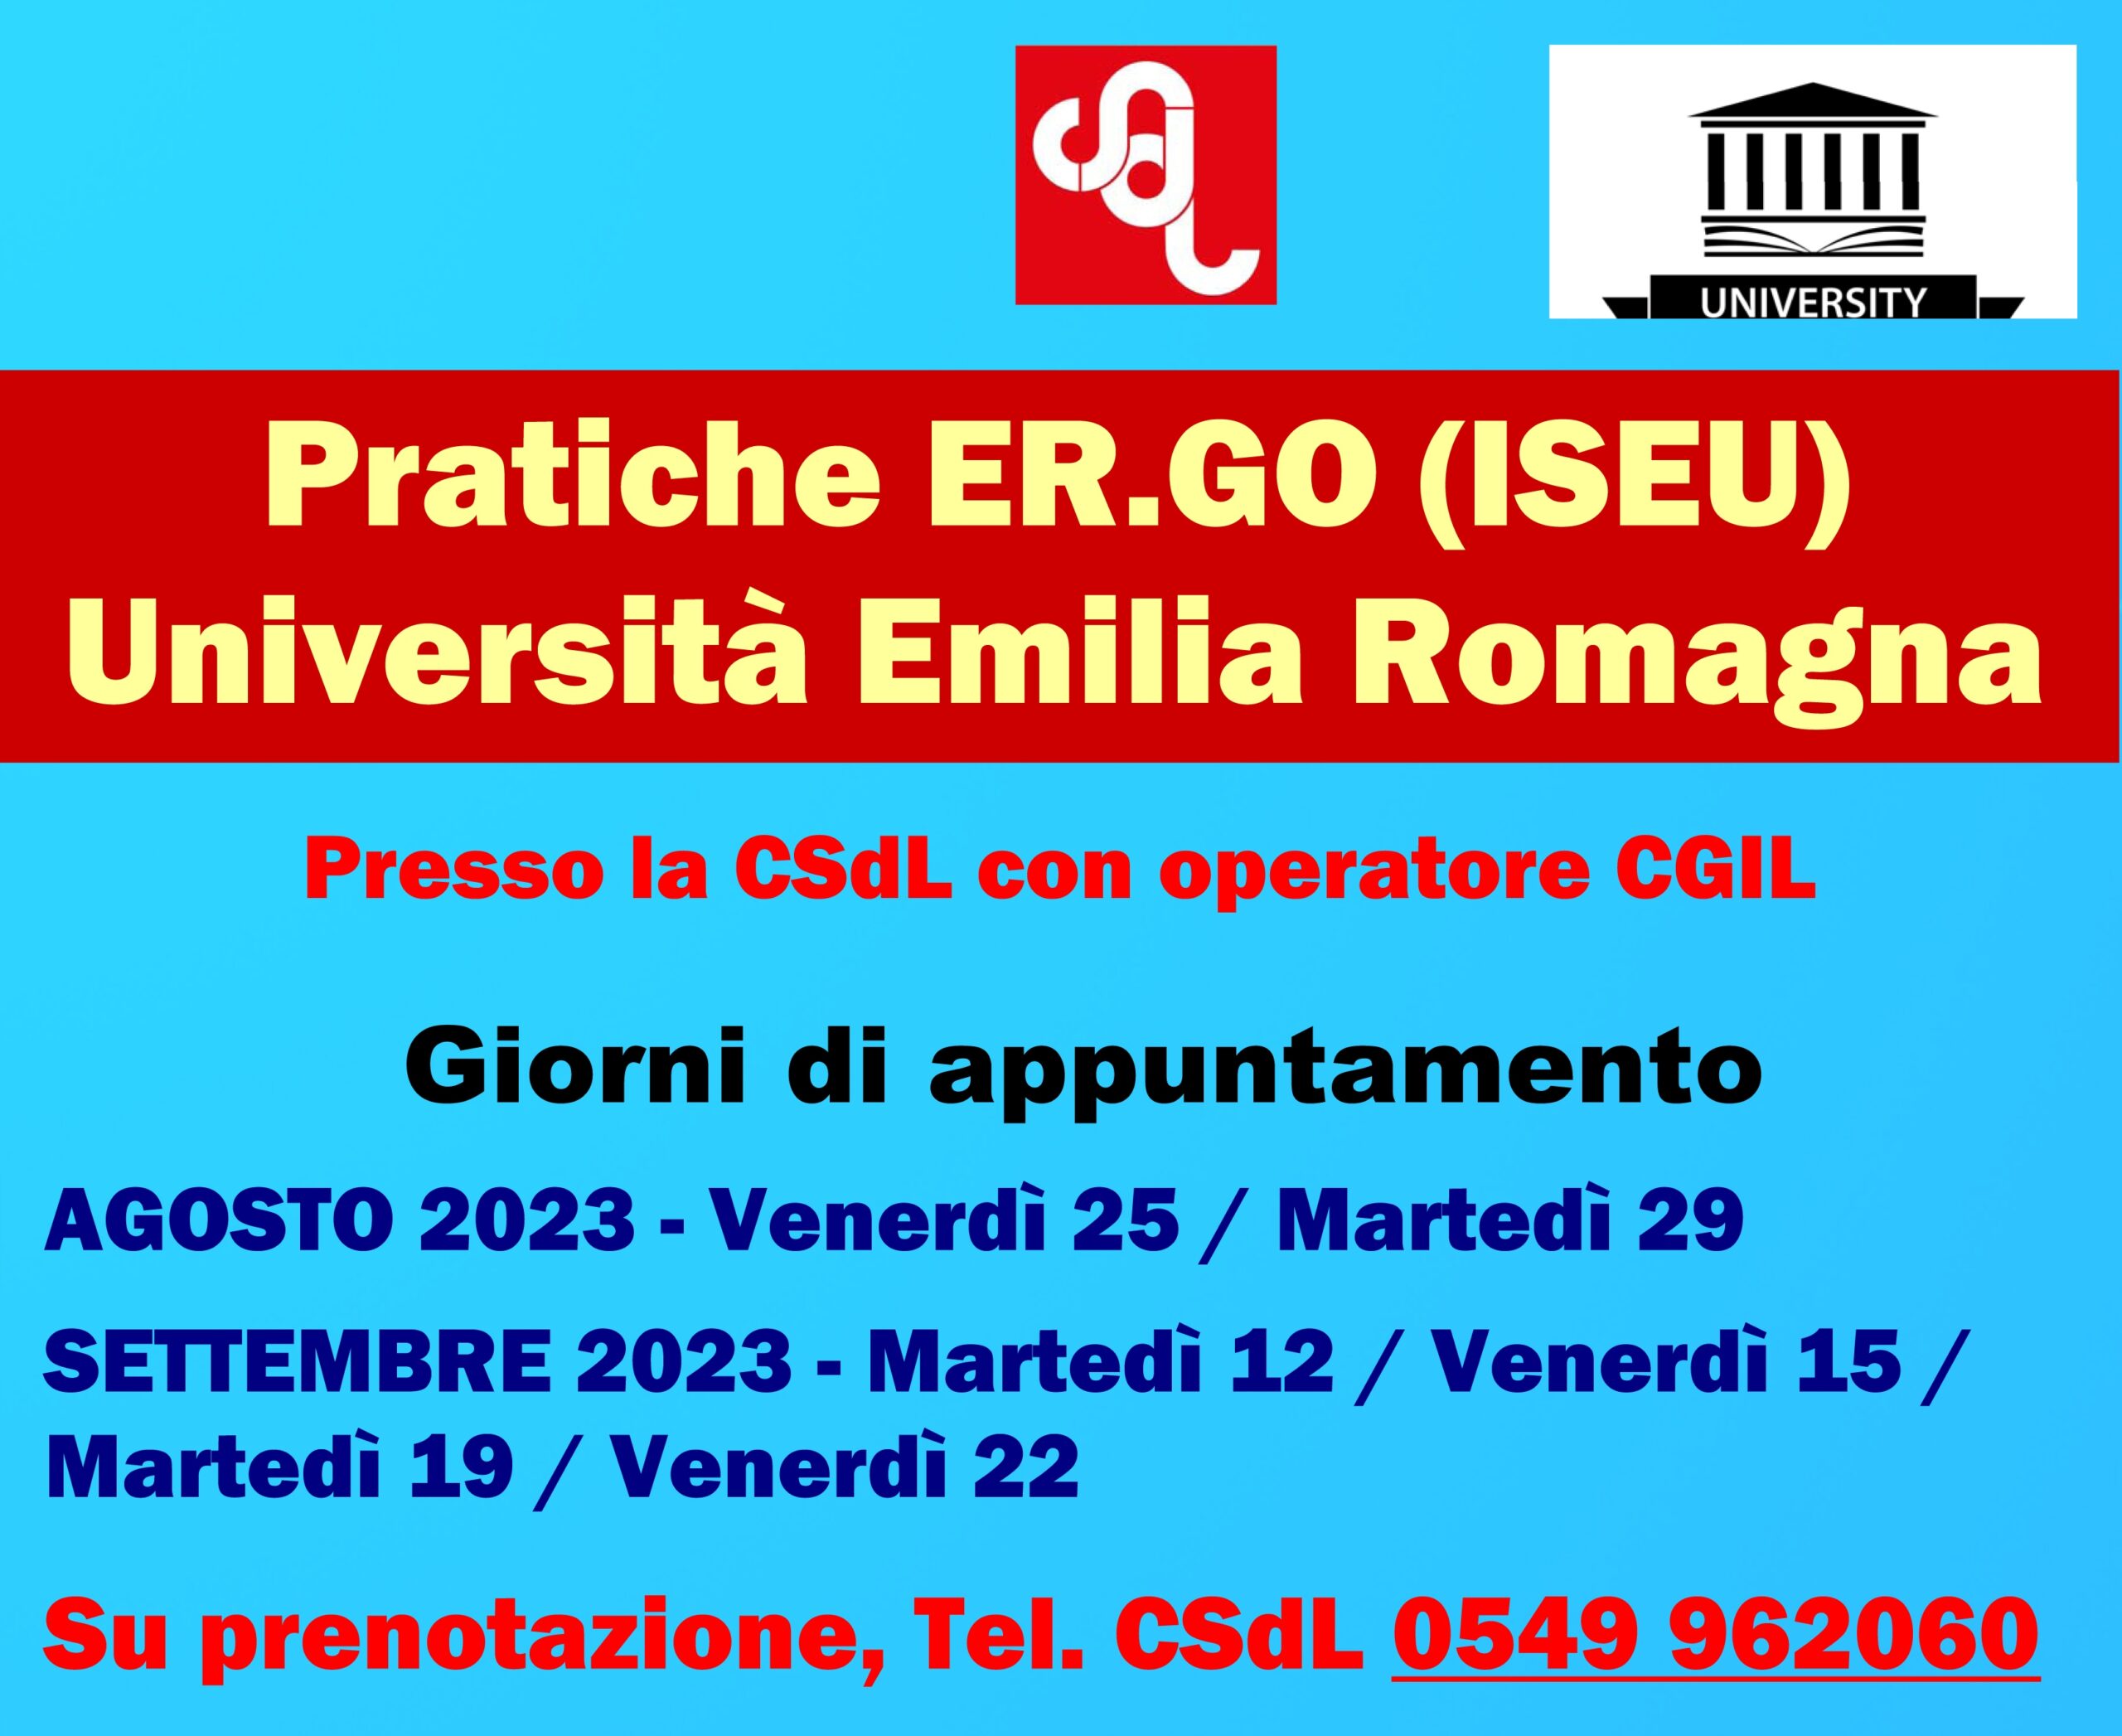 San Marino. Iniziano dal 25 agosto presso la sede CSdL le pratiche ER.GO (ISEU) per le Università dell’Emilia Romagna